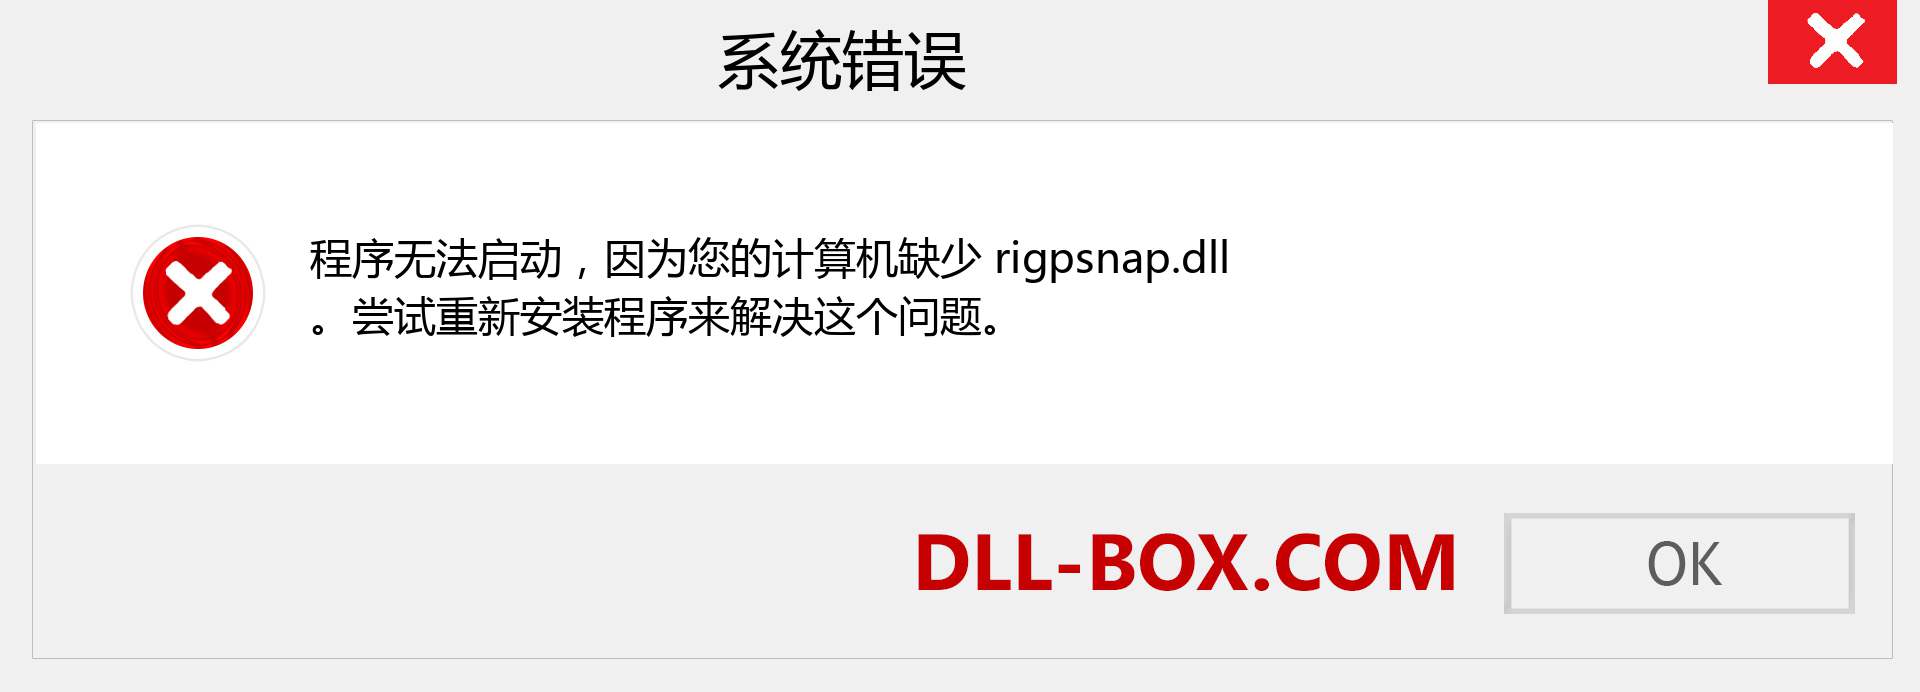 rigpsnap.dll 文件丢失？。 适用于 Windows 7、8、10 的下载 - 修复 Windows、照片、图像上的 rigpsnap dll 丢失错误